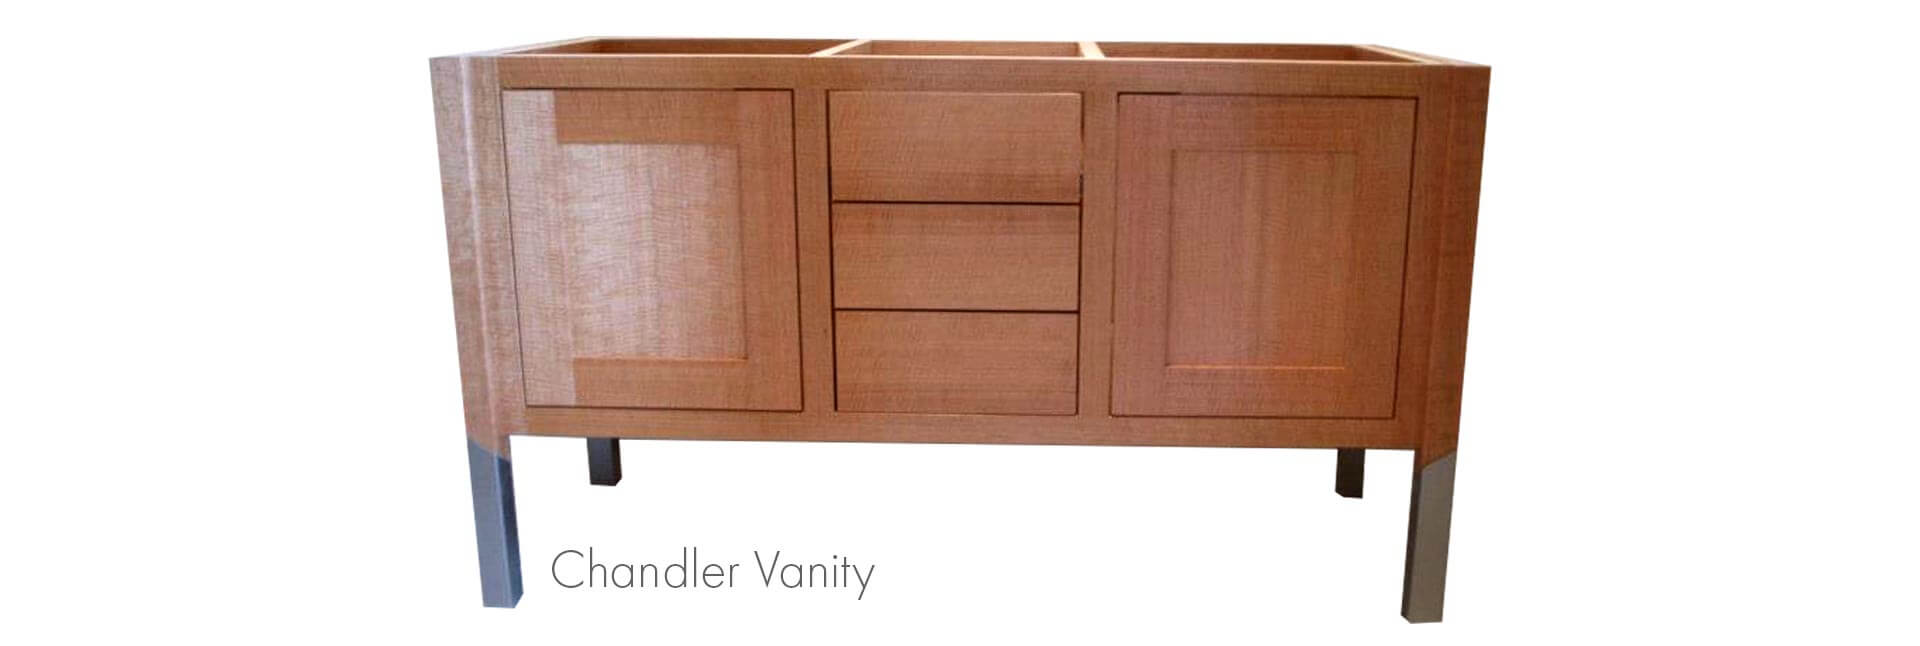 Chandler-Vanity-Featured